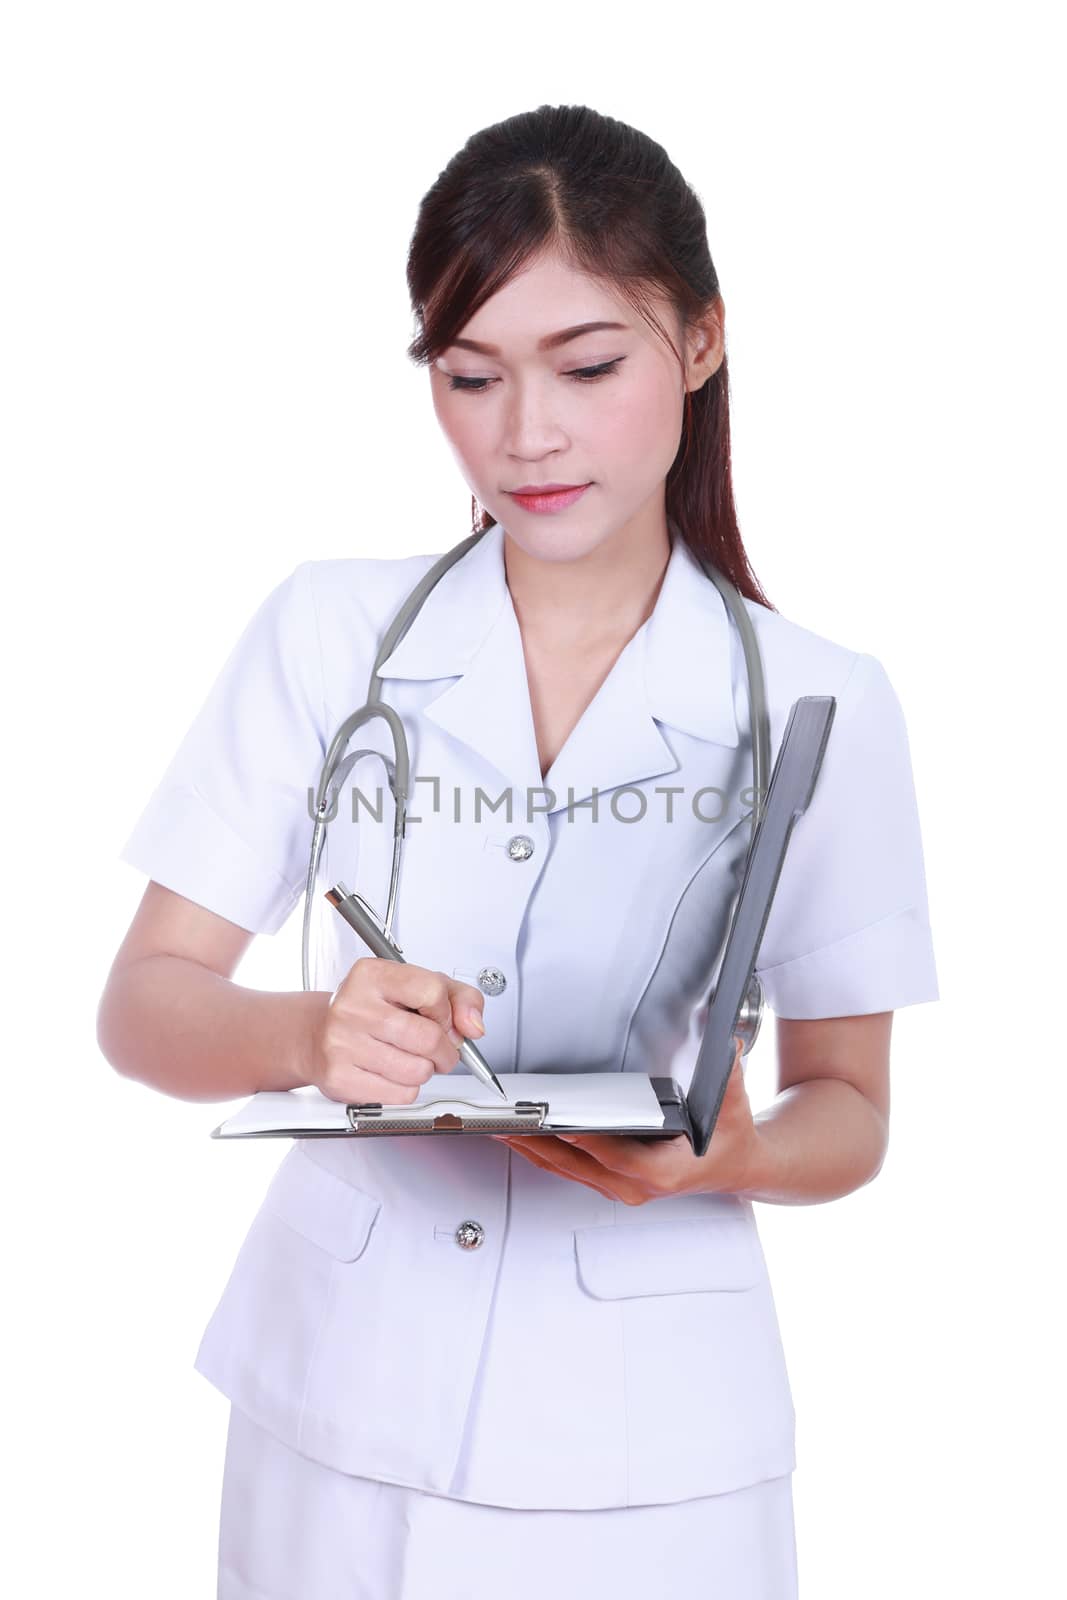 female nurse writing medical report isolated on white background